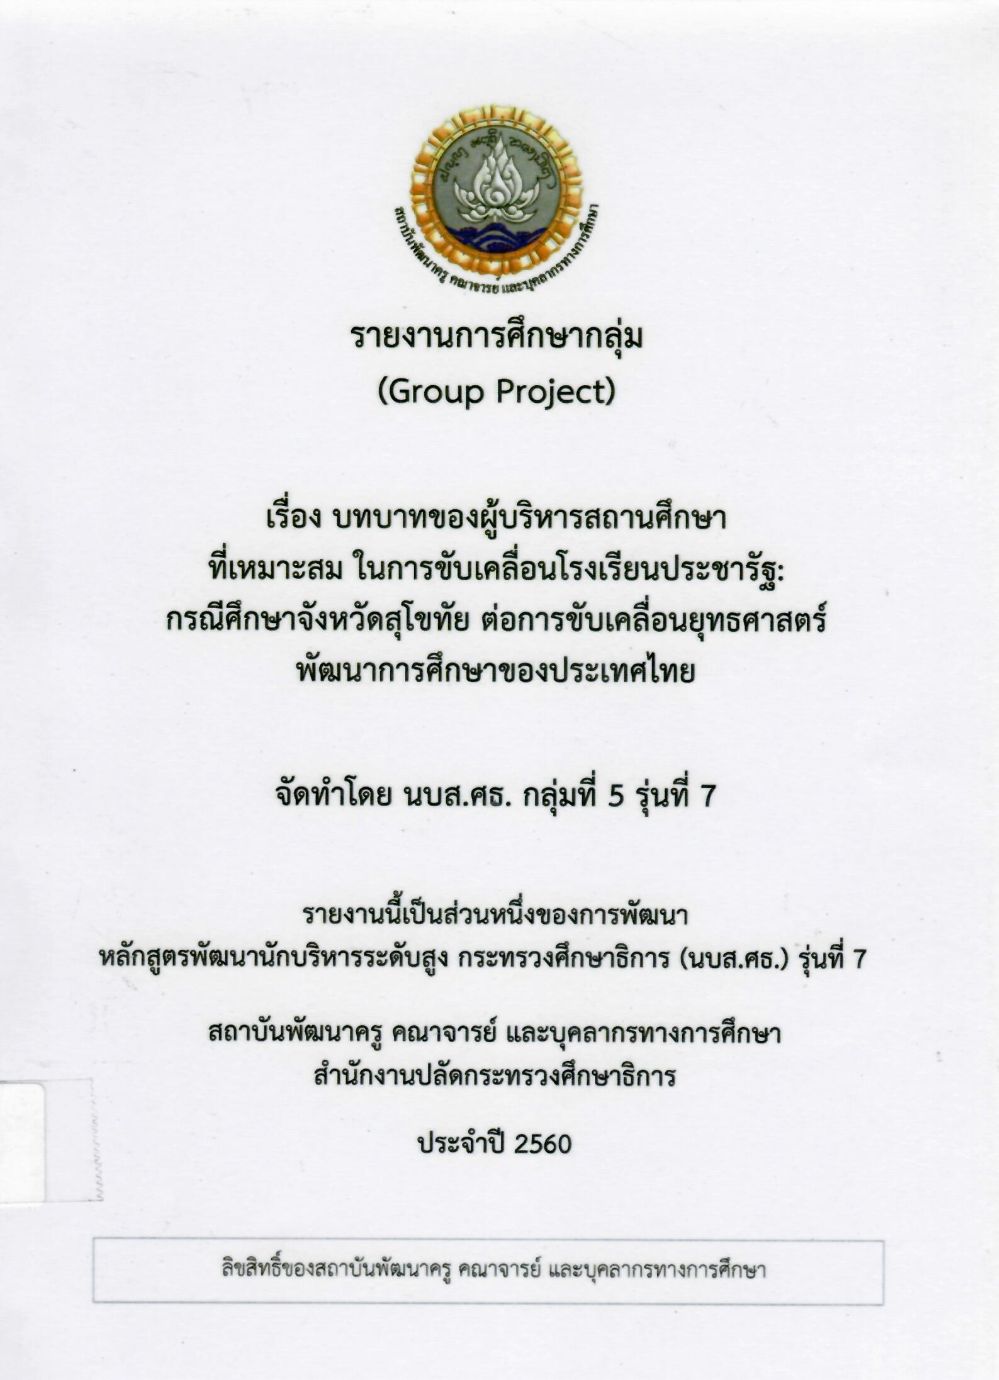 บทบาทของผู้บริหารสถานศึกษาที่เหมาะสม ในการขับเคลื่อนโรงเรียนประชารัฐ กรณีศึกษาจังหวัดสุโขทัย ต่อการขับเคลื่อนยุทธศาสตร์พัฒนาการศึกษาของประเทศไทย: รายงานการศึกษากลุ่ม (Group Project)/ จิราภรณ์ ไทยกิ่ง...[และคนอื่น ๆ]